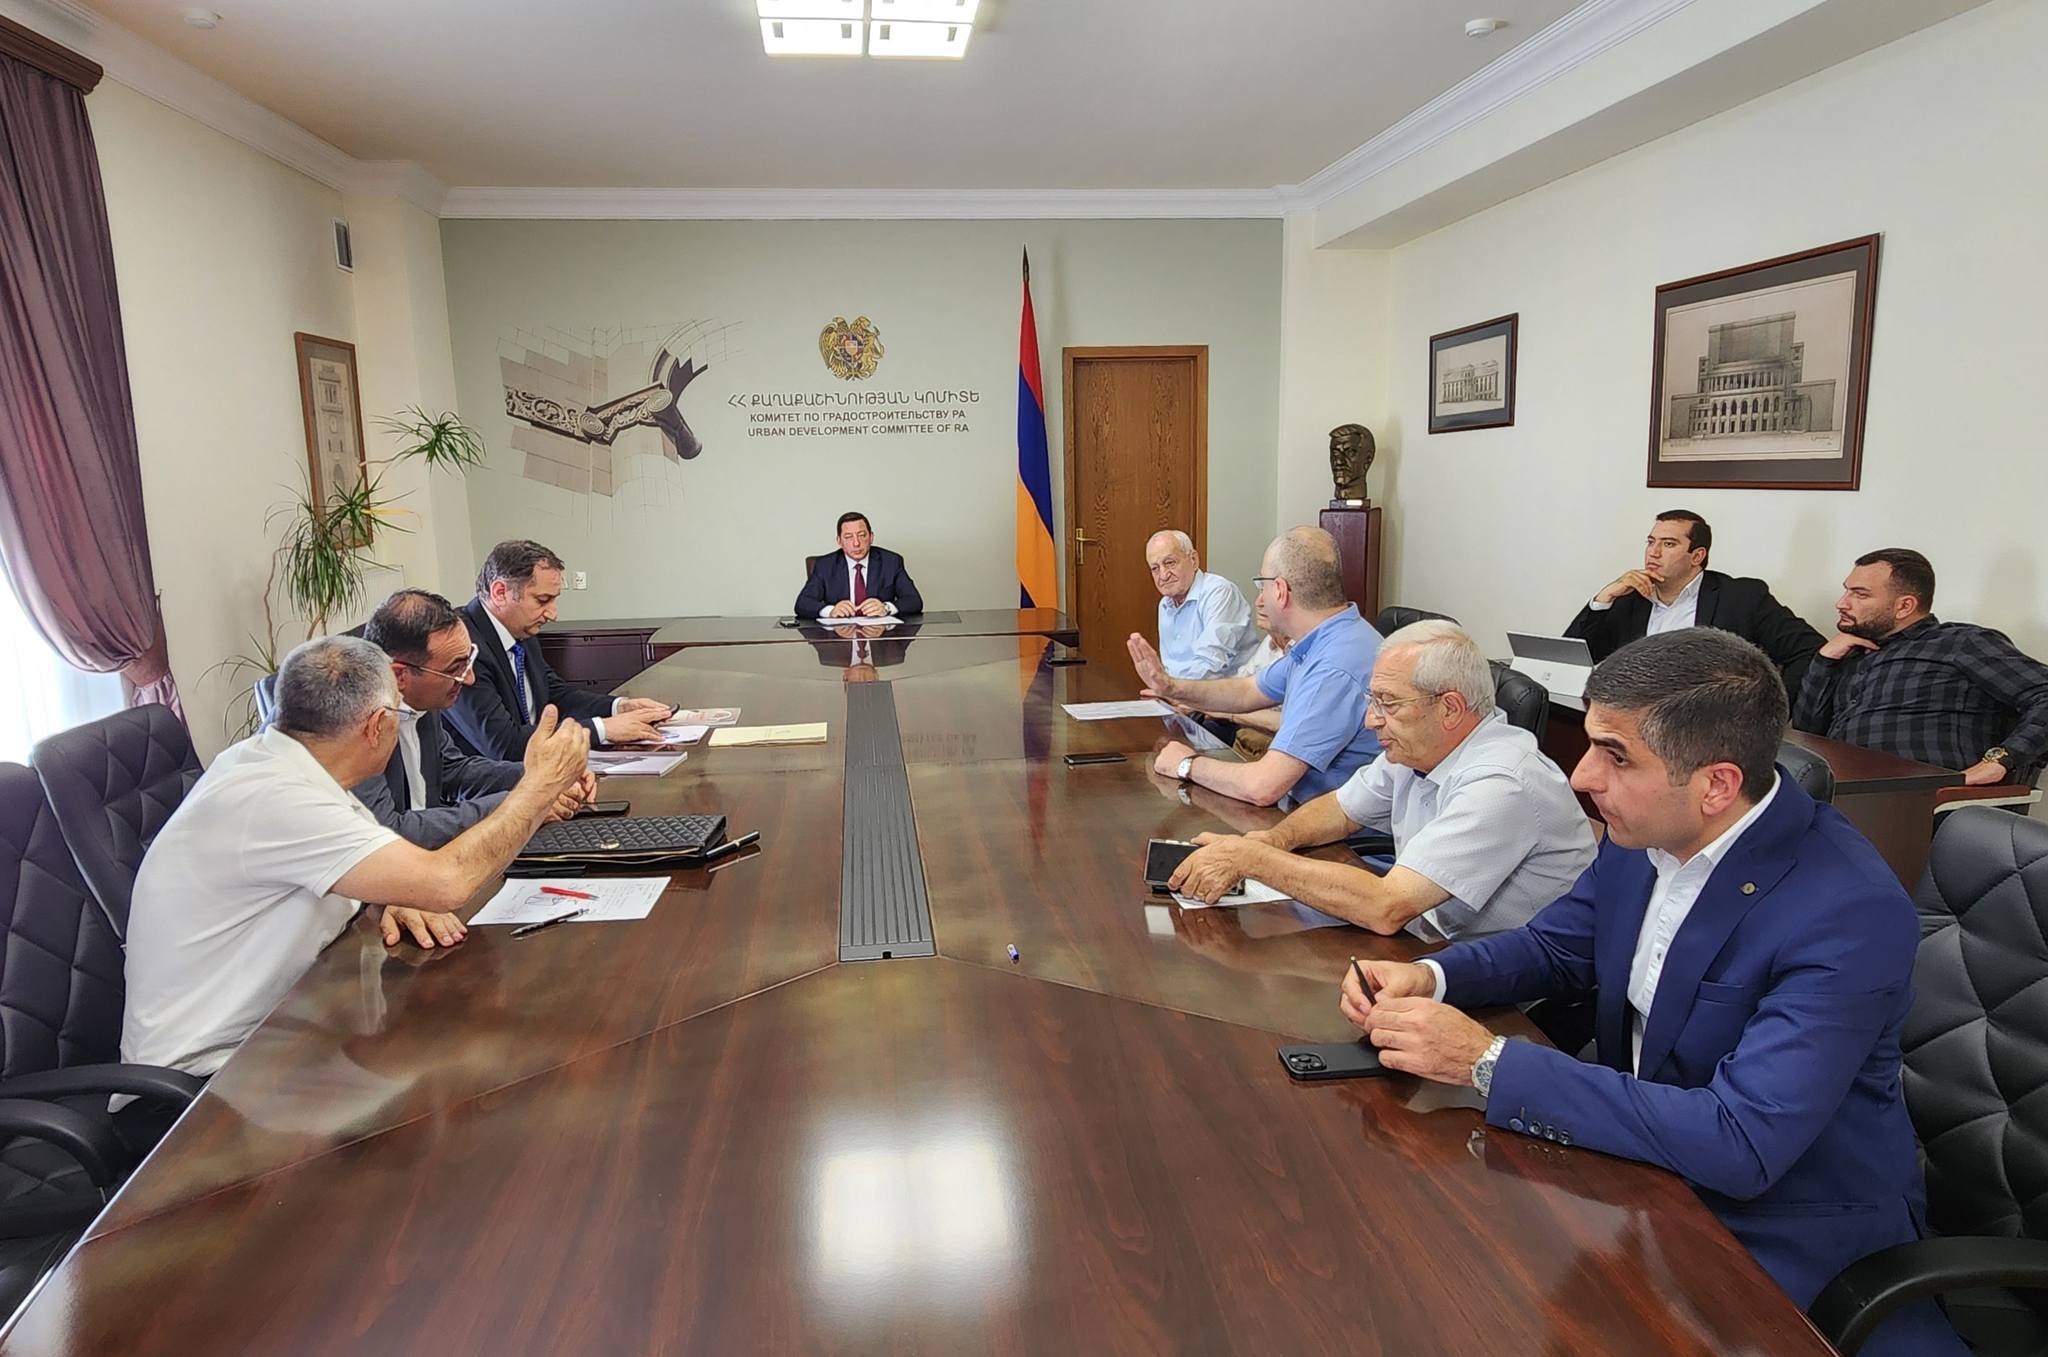 Կայացել է Քաղաքաշինության կոմիտեի նախագահ Եղիազար Վարդանյանի գլխավորությամբ գիտատեխնիկական խորհրդի հերթական նիստը